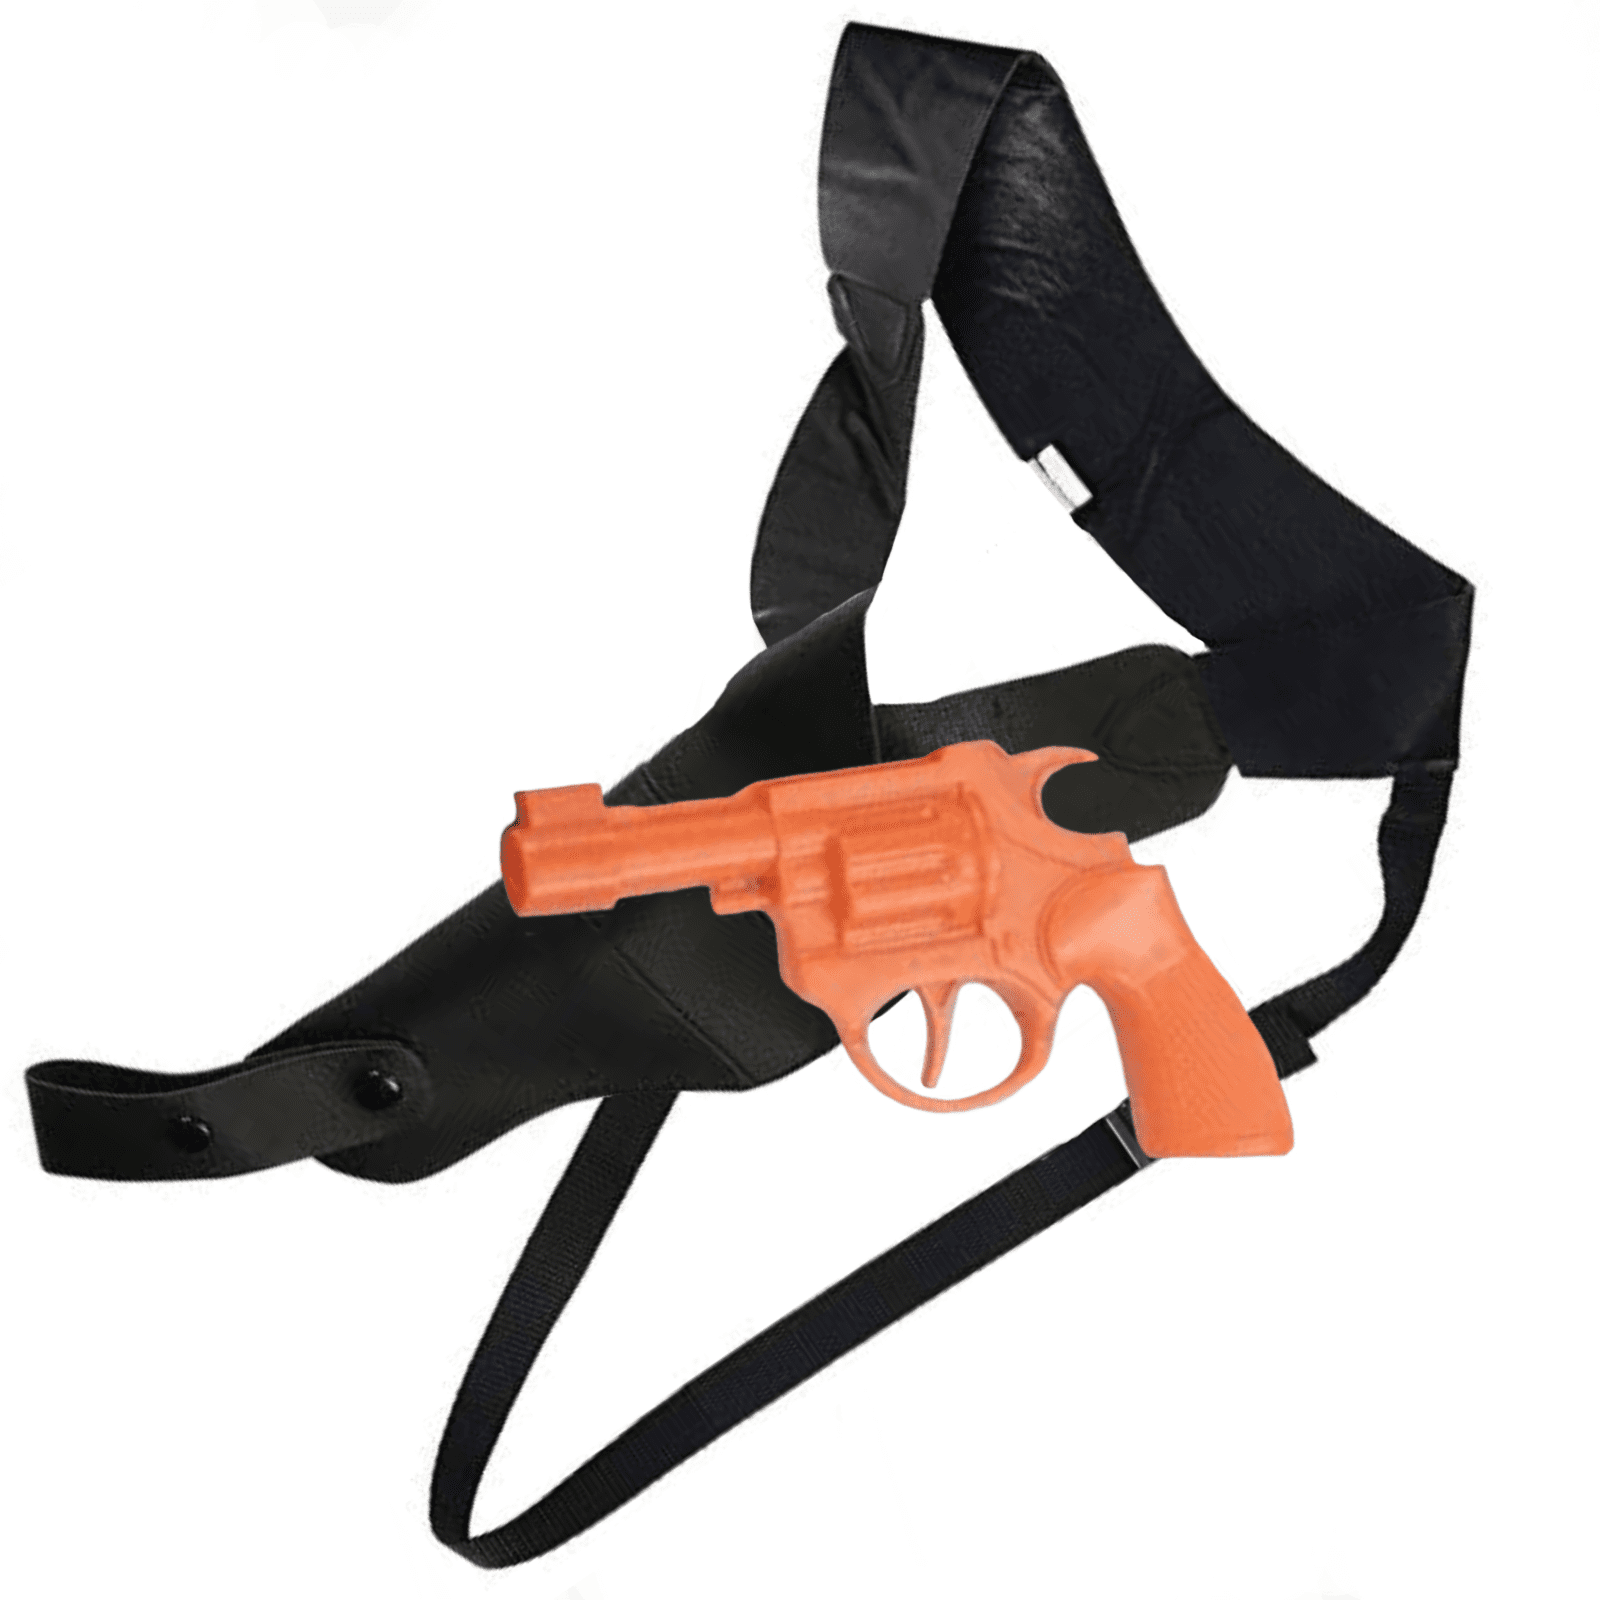 Featured image for “Spy Gangster Gun w/Shoulder Holster”